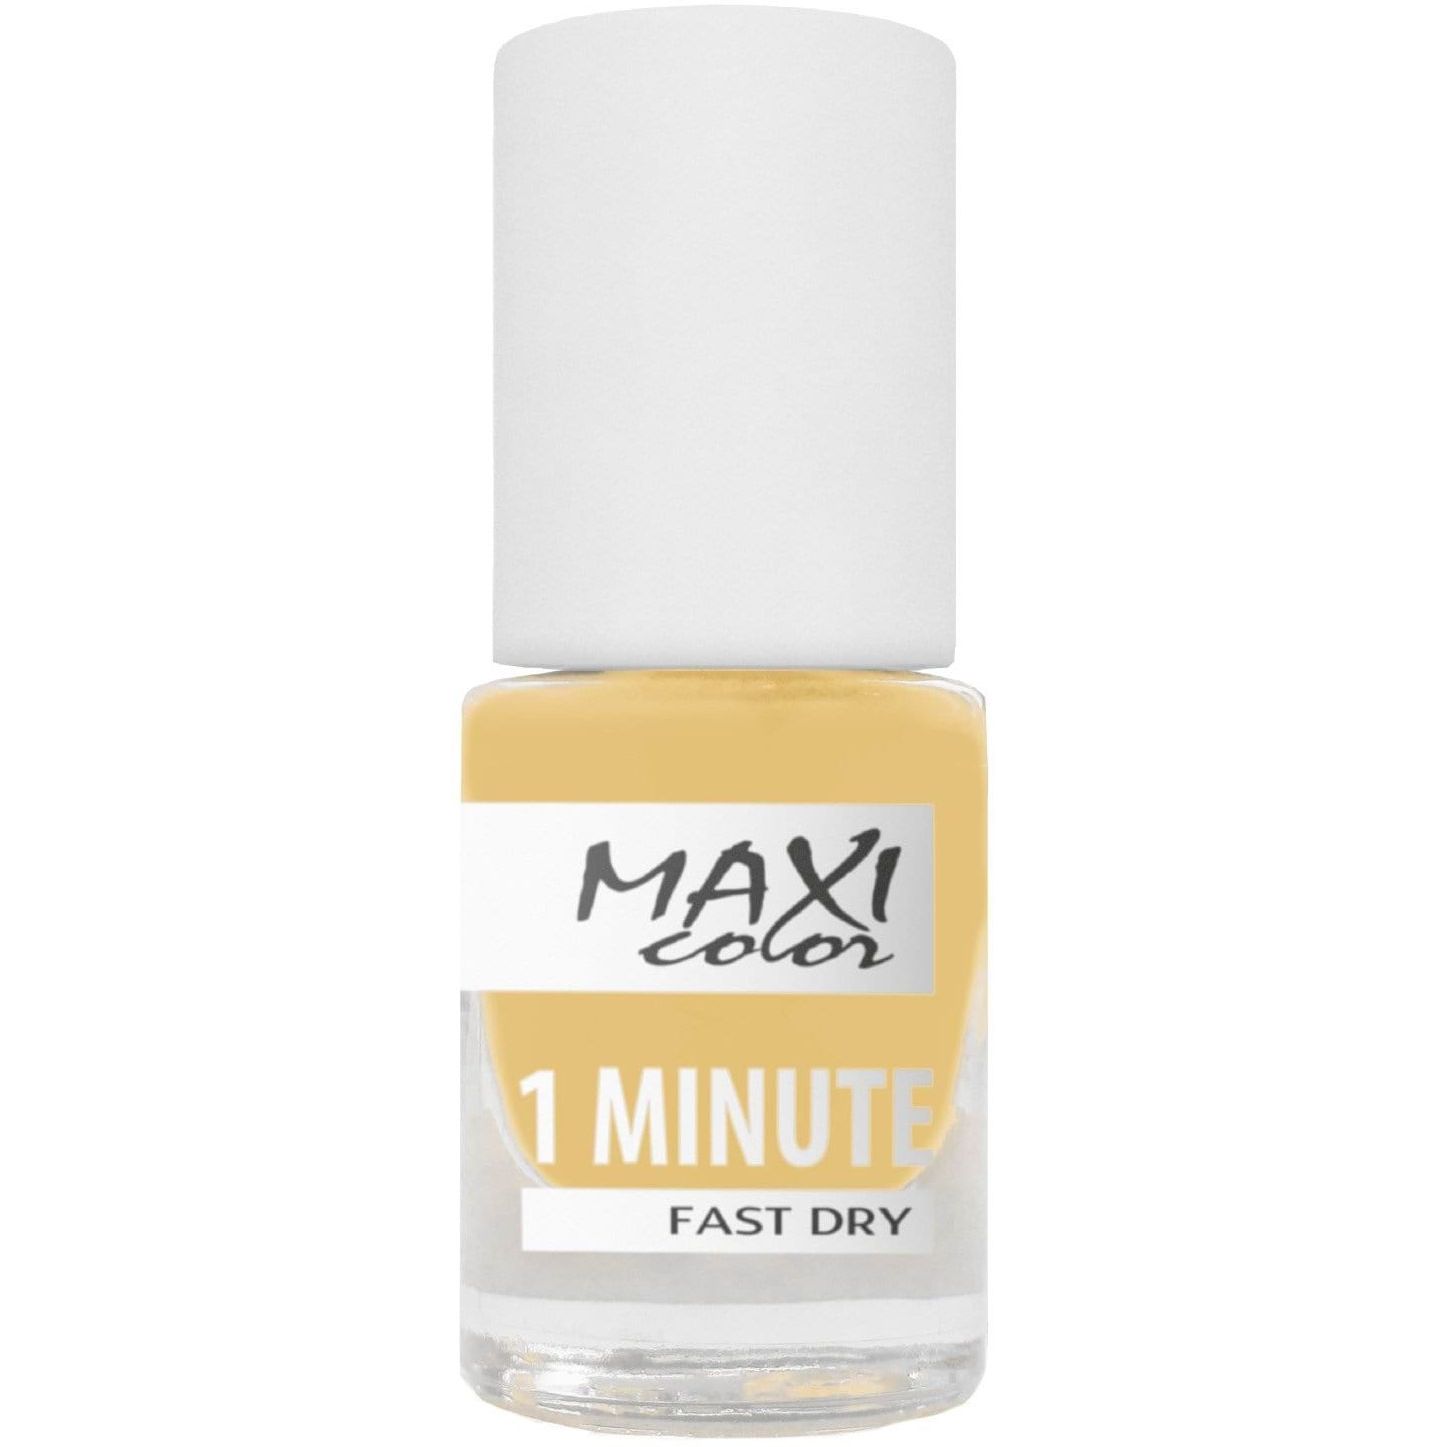 Лак для ногтей Maxi Color 1 Minute Fast Dry тон 013, 6 мл - фото 1